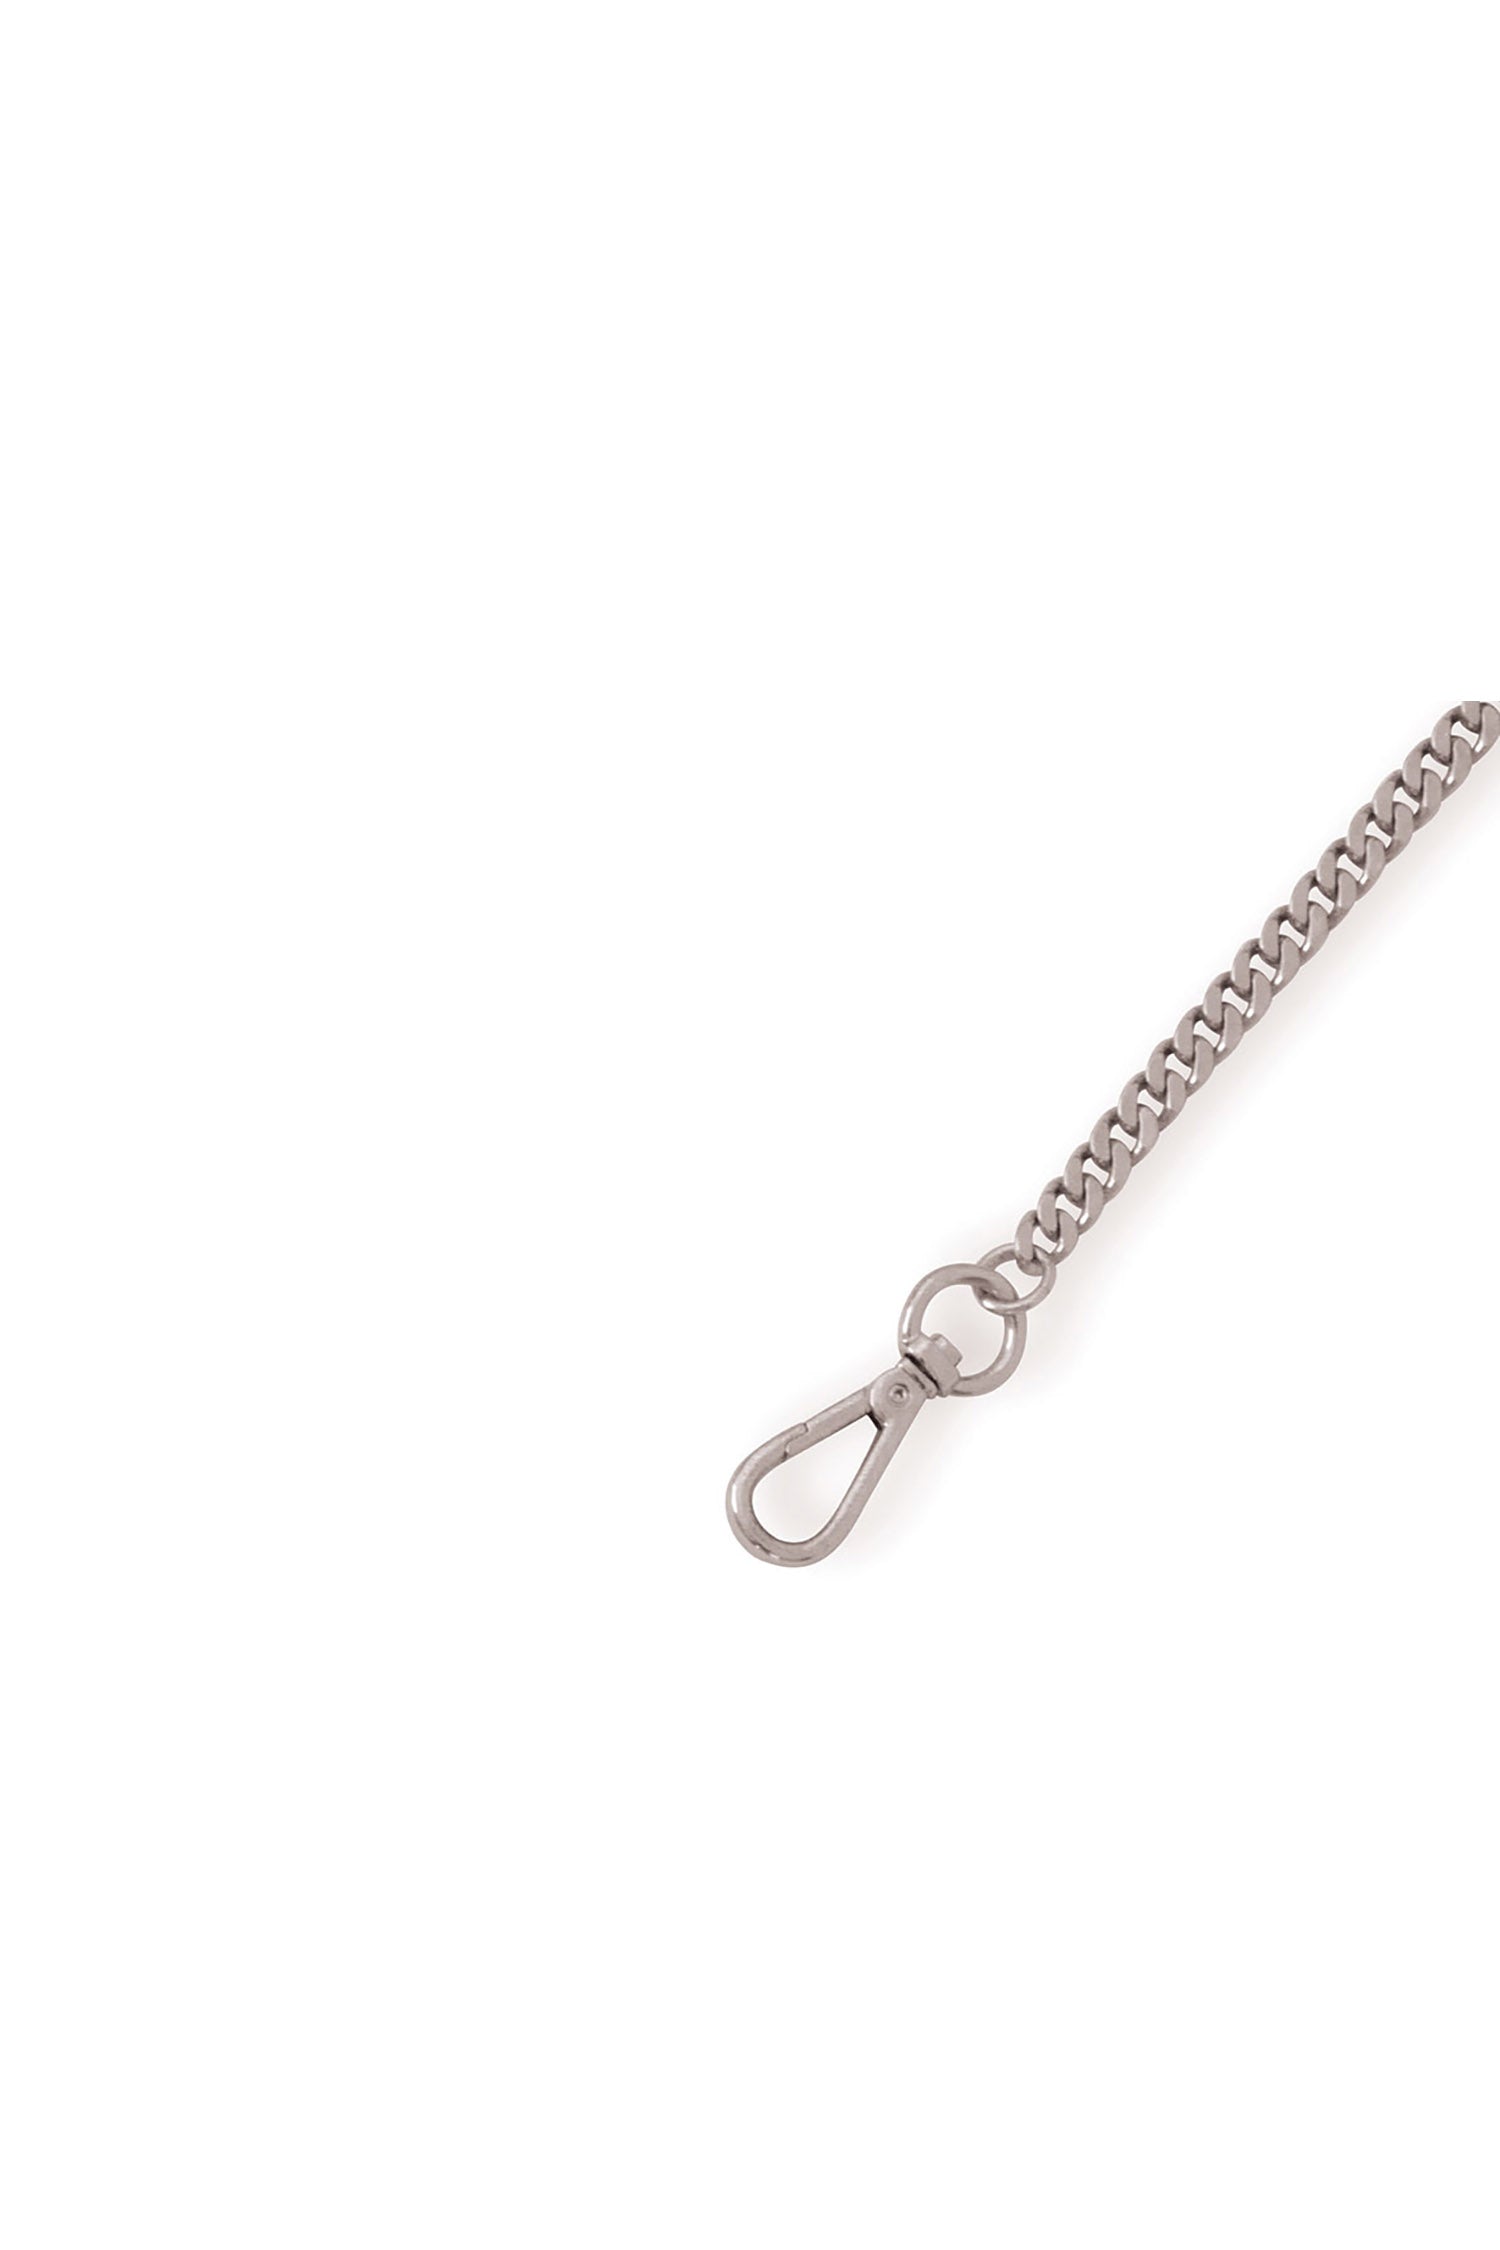 SAMPLE - The Binx Chain Strap Silver